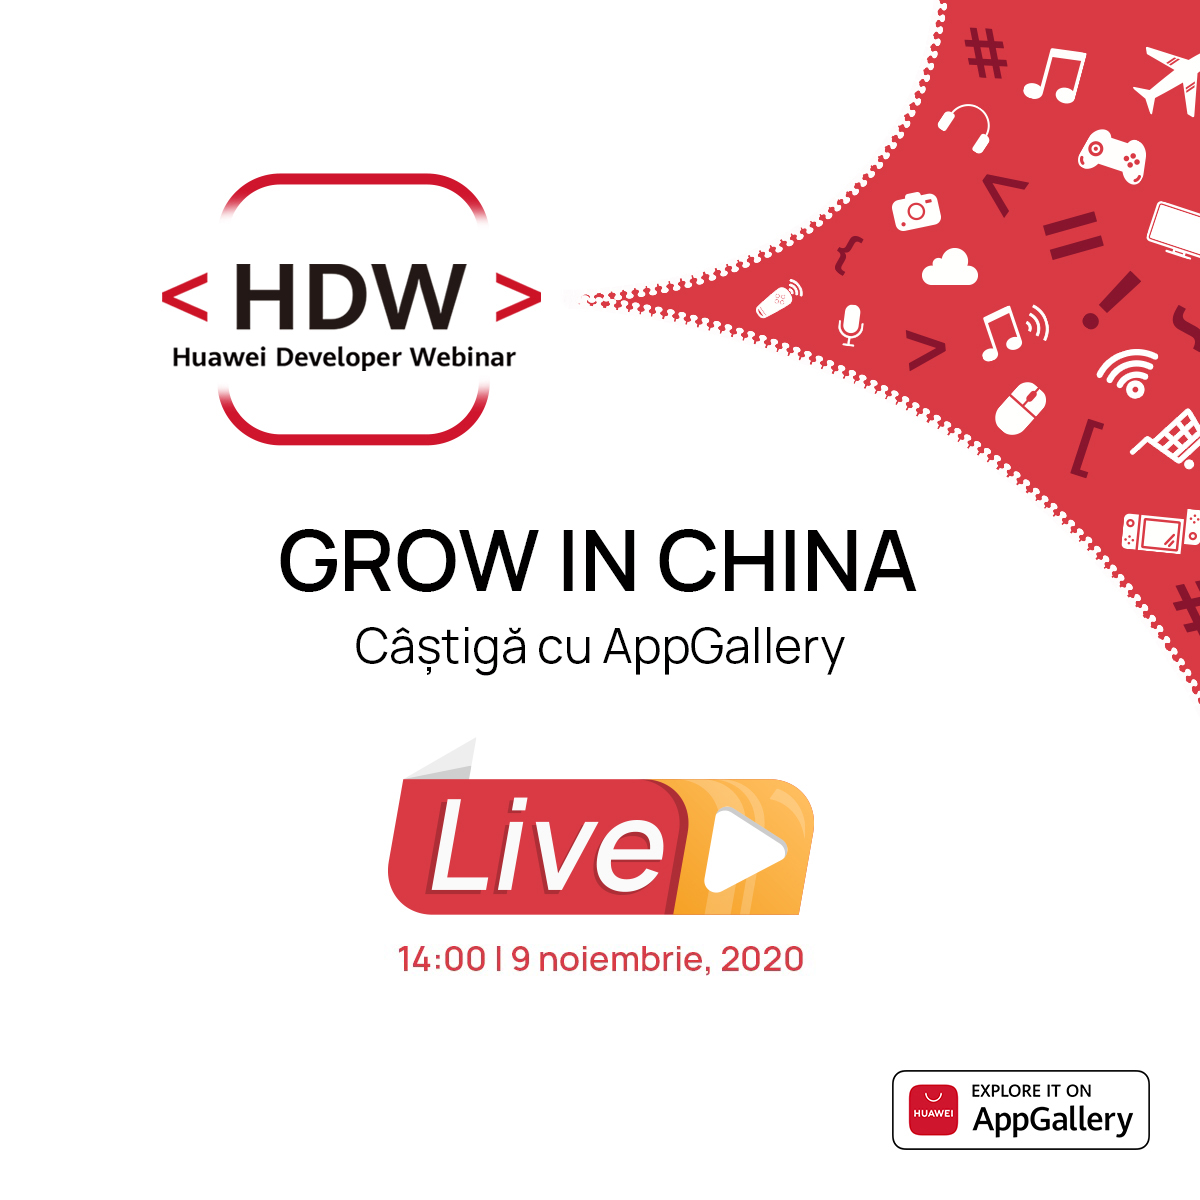 Huawei Developer Webinar, eveniment dedicat partenerilor și dezvoltatorilor globali de aplicații interesați de piața din China